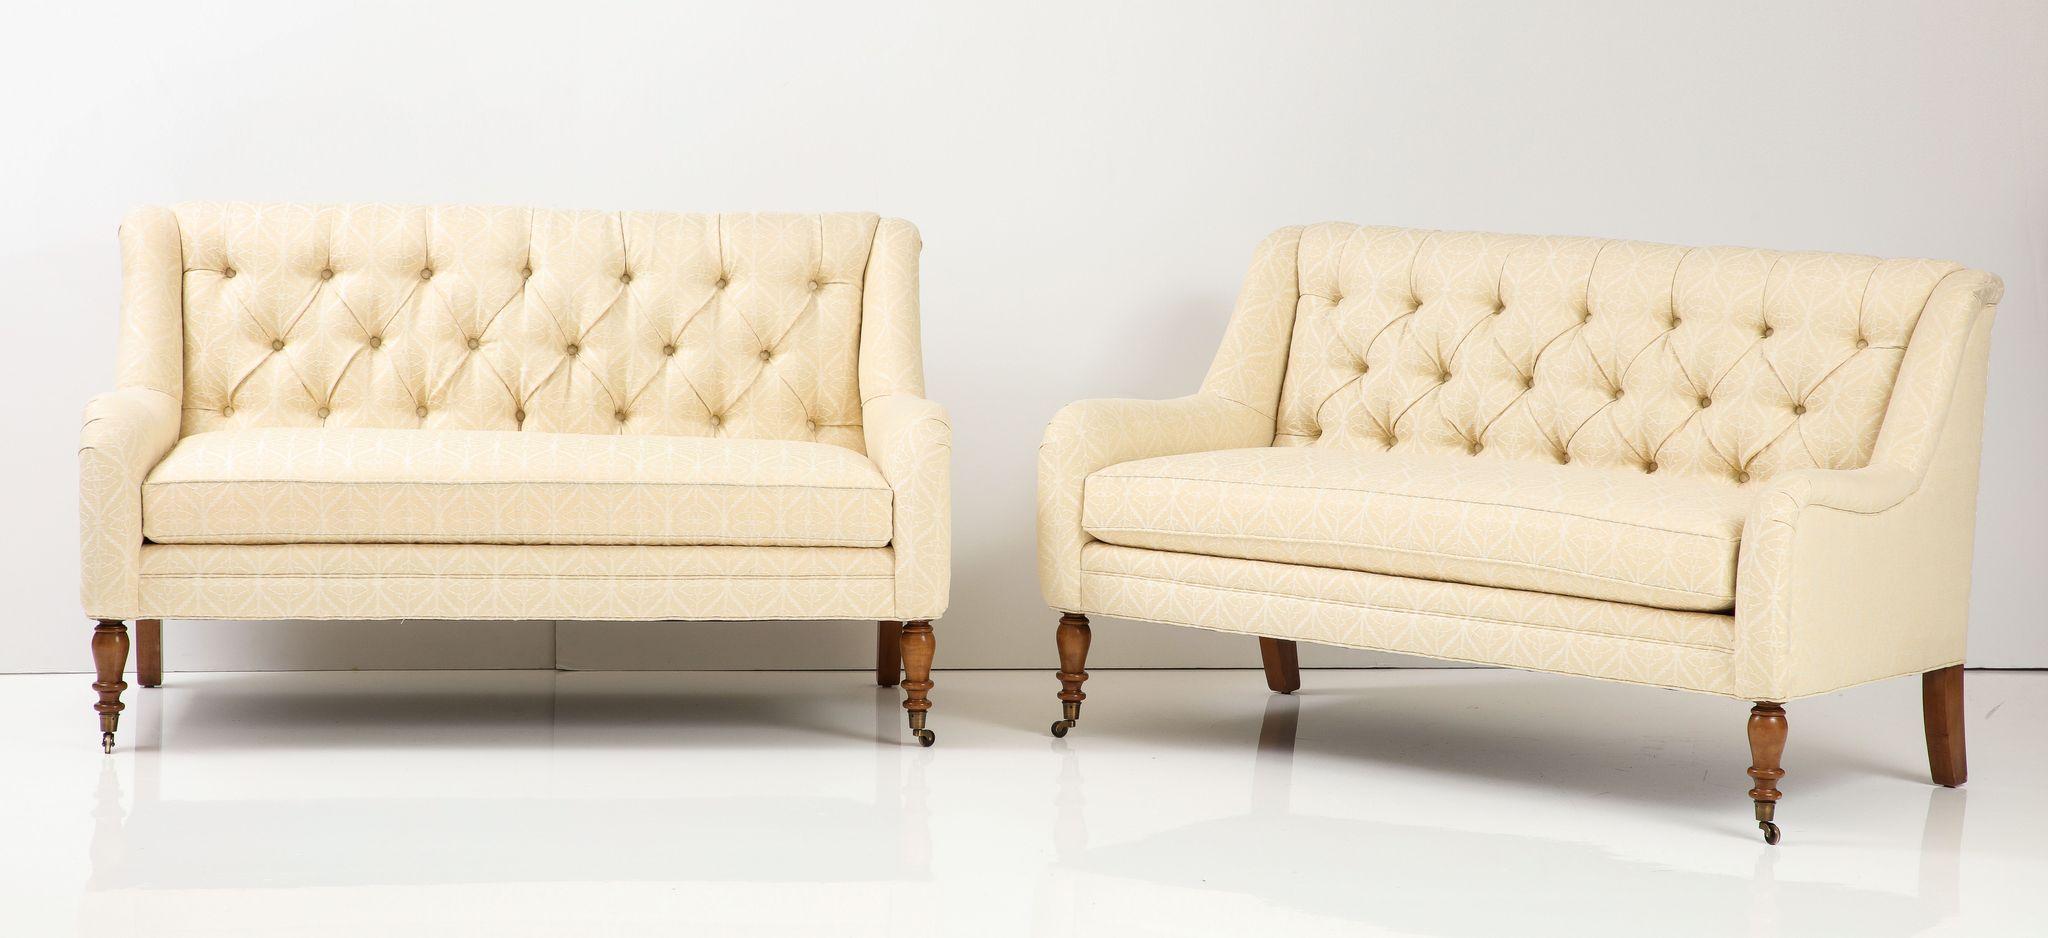 Die klaren Linien dieser beiden Sessel machen sie vielseitig einsetzbar - sie passen perfekt in einen Eingangsbereich, an einen Kamin oder als Sitzgelegenheit an einen Esstisch. Die Sessel haben eine getuftete Rückenlehne und ein lockeres